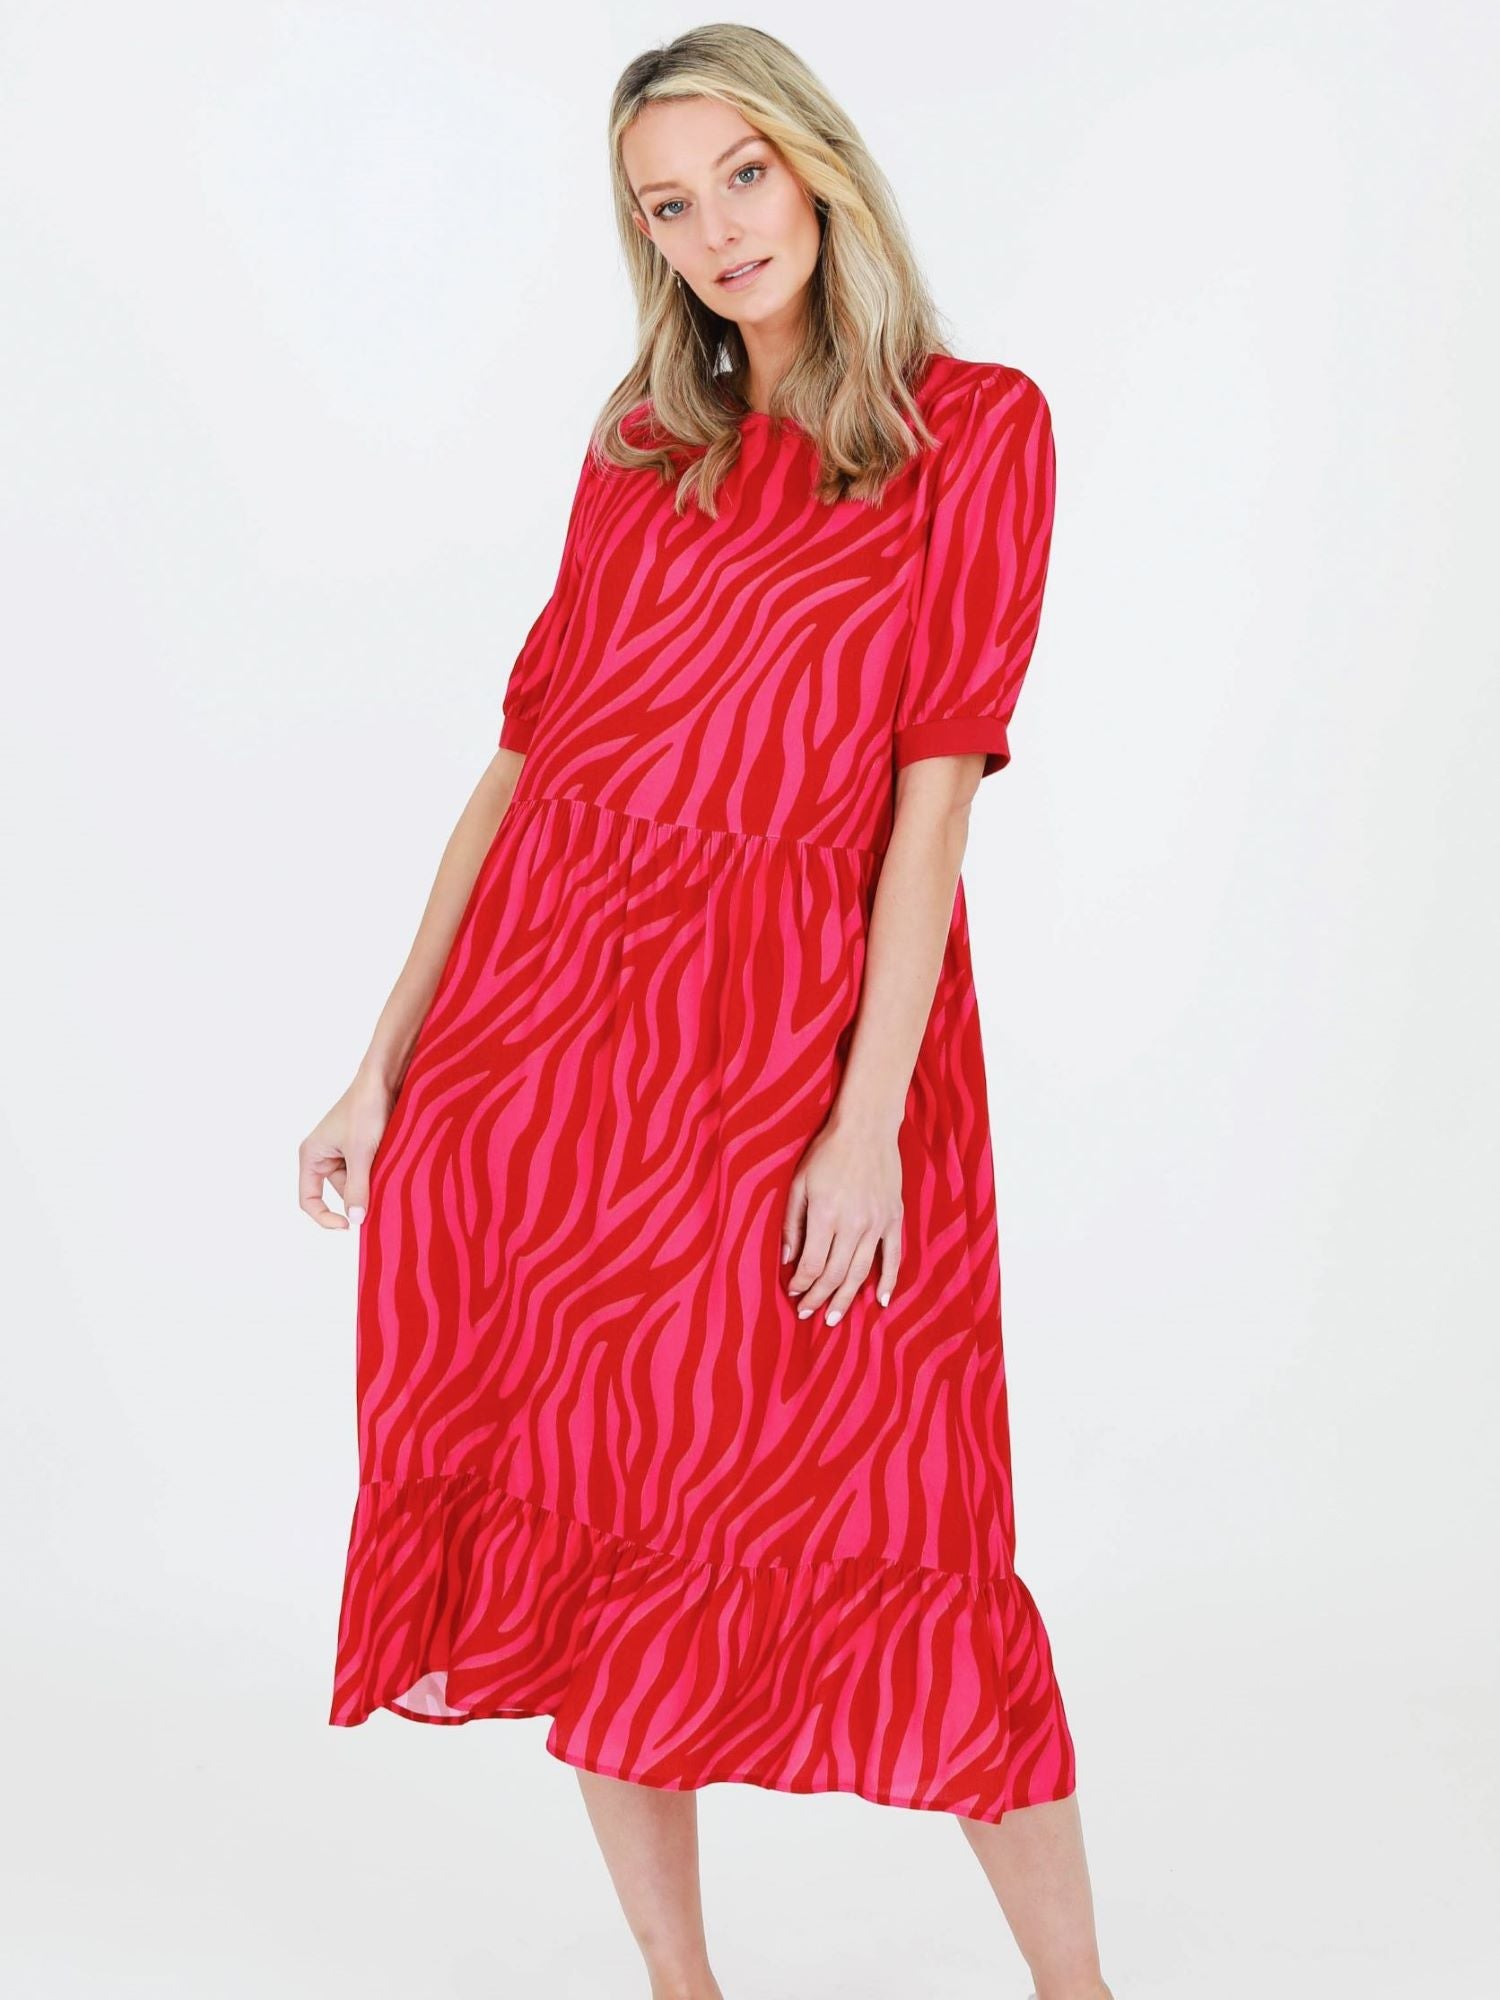 MIdi red tiger striped dress